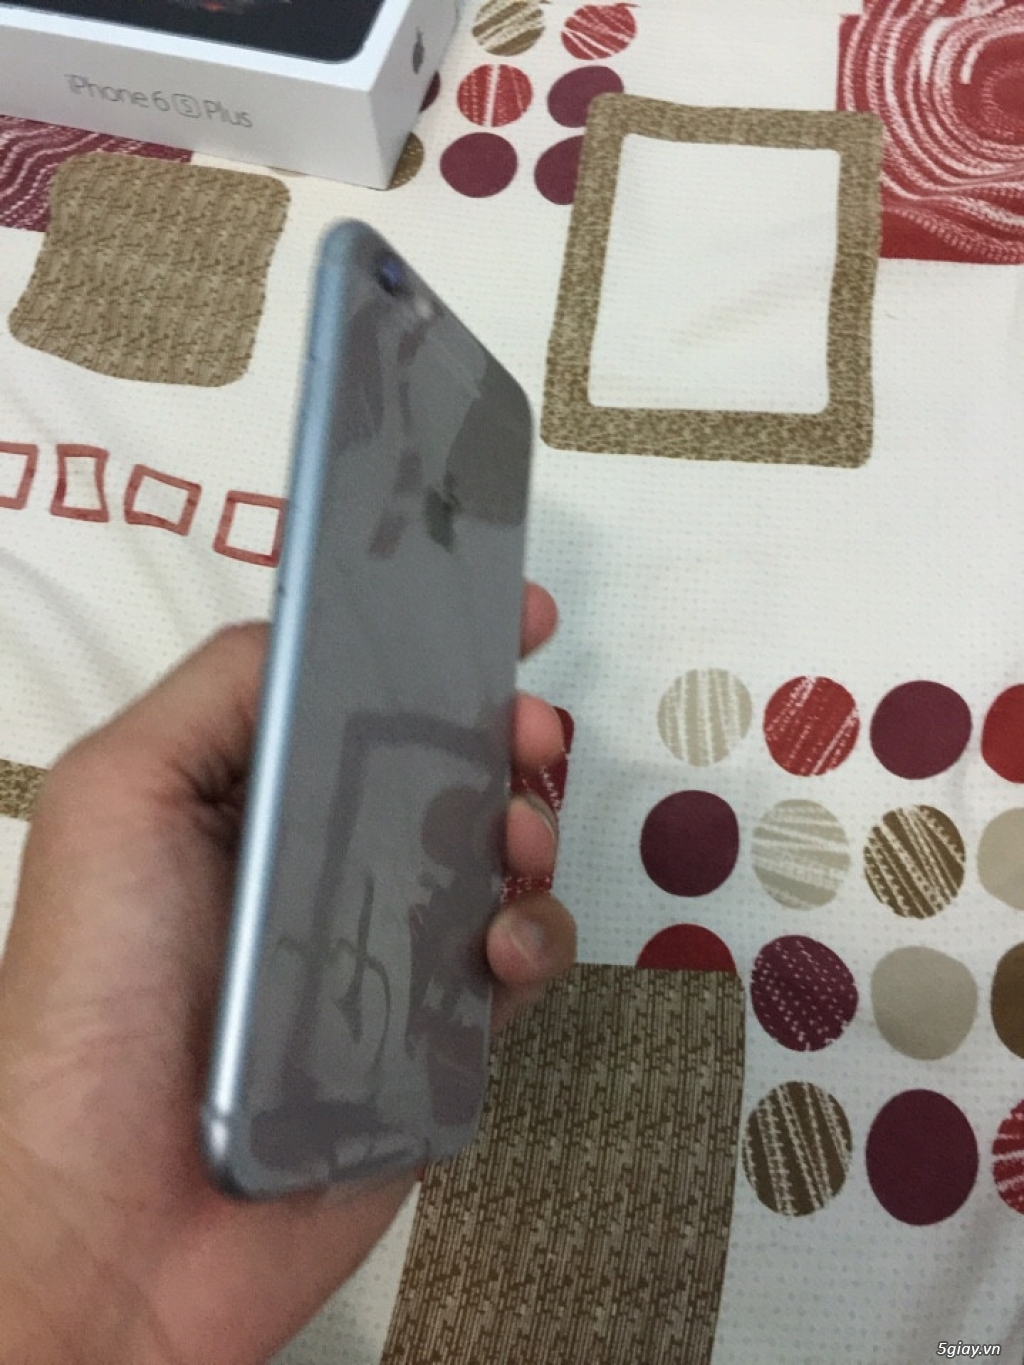 iPhone 6 Plus mày Gray 64GB xách tay từ Mỹ giá Shock - 5